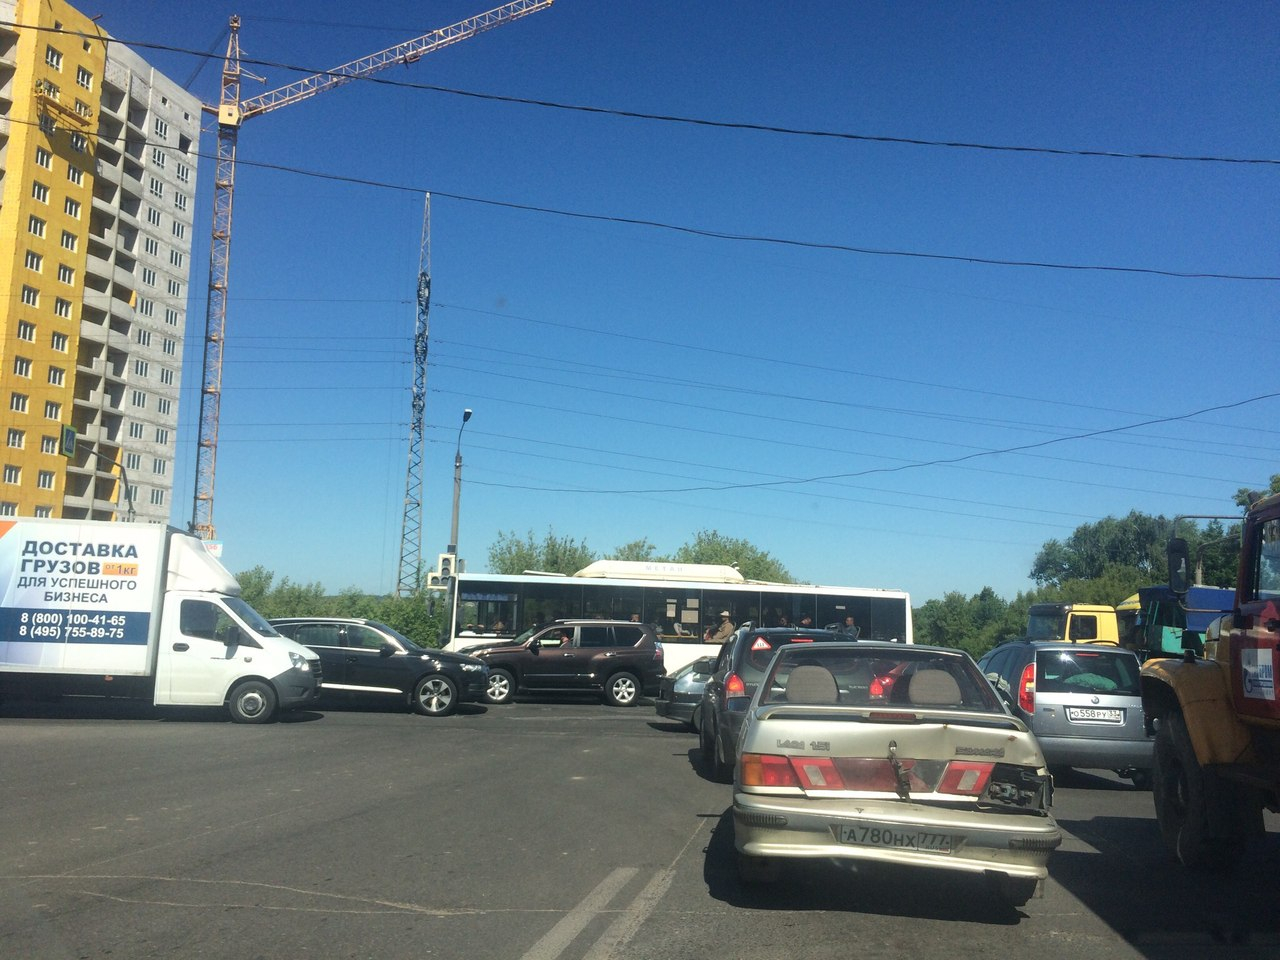 Часть светофоров во Владимире перестала работать из-за перебоев с электричеством